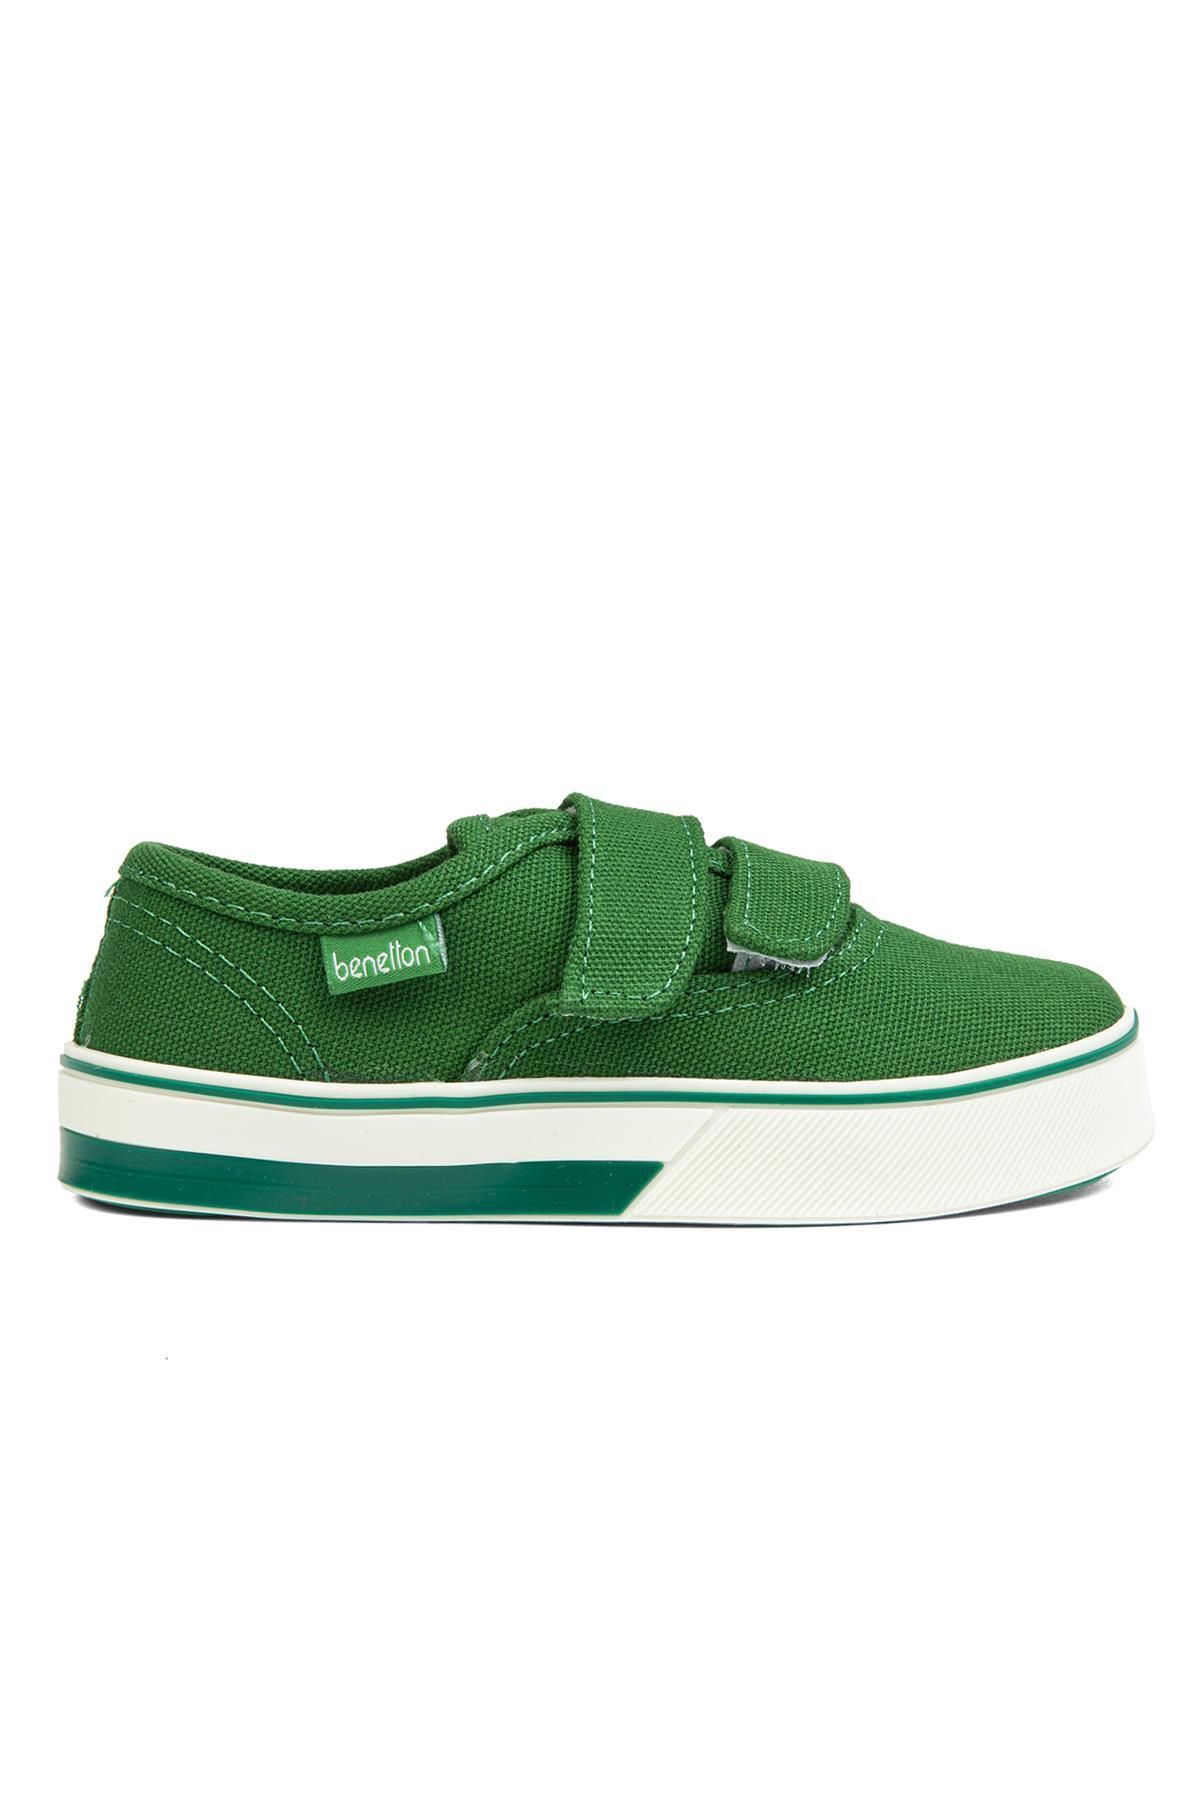 Benetton ® | BN-30960- Yesil - Çocuk Spor Ayakkabı